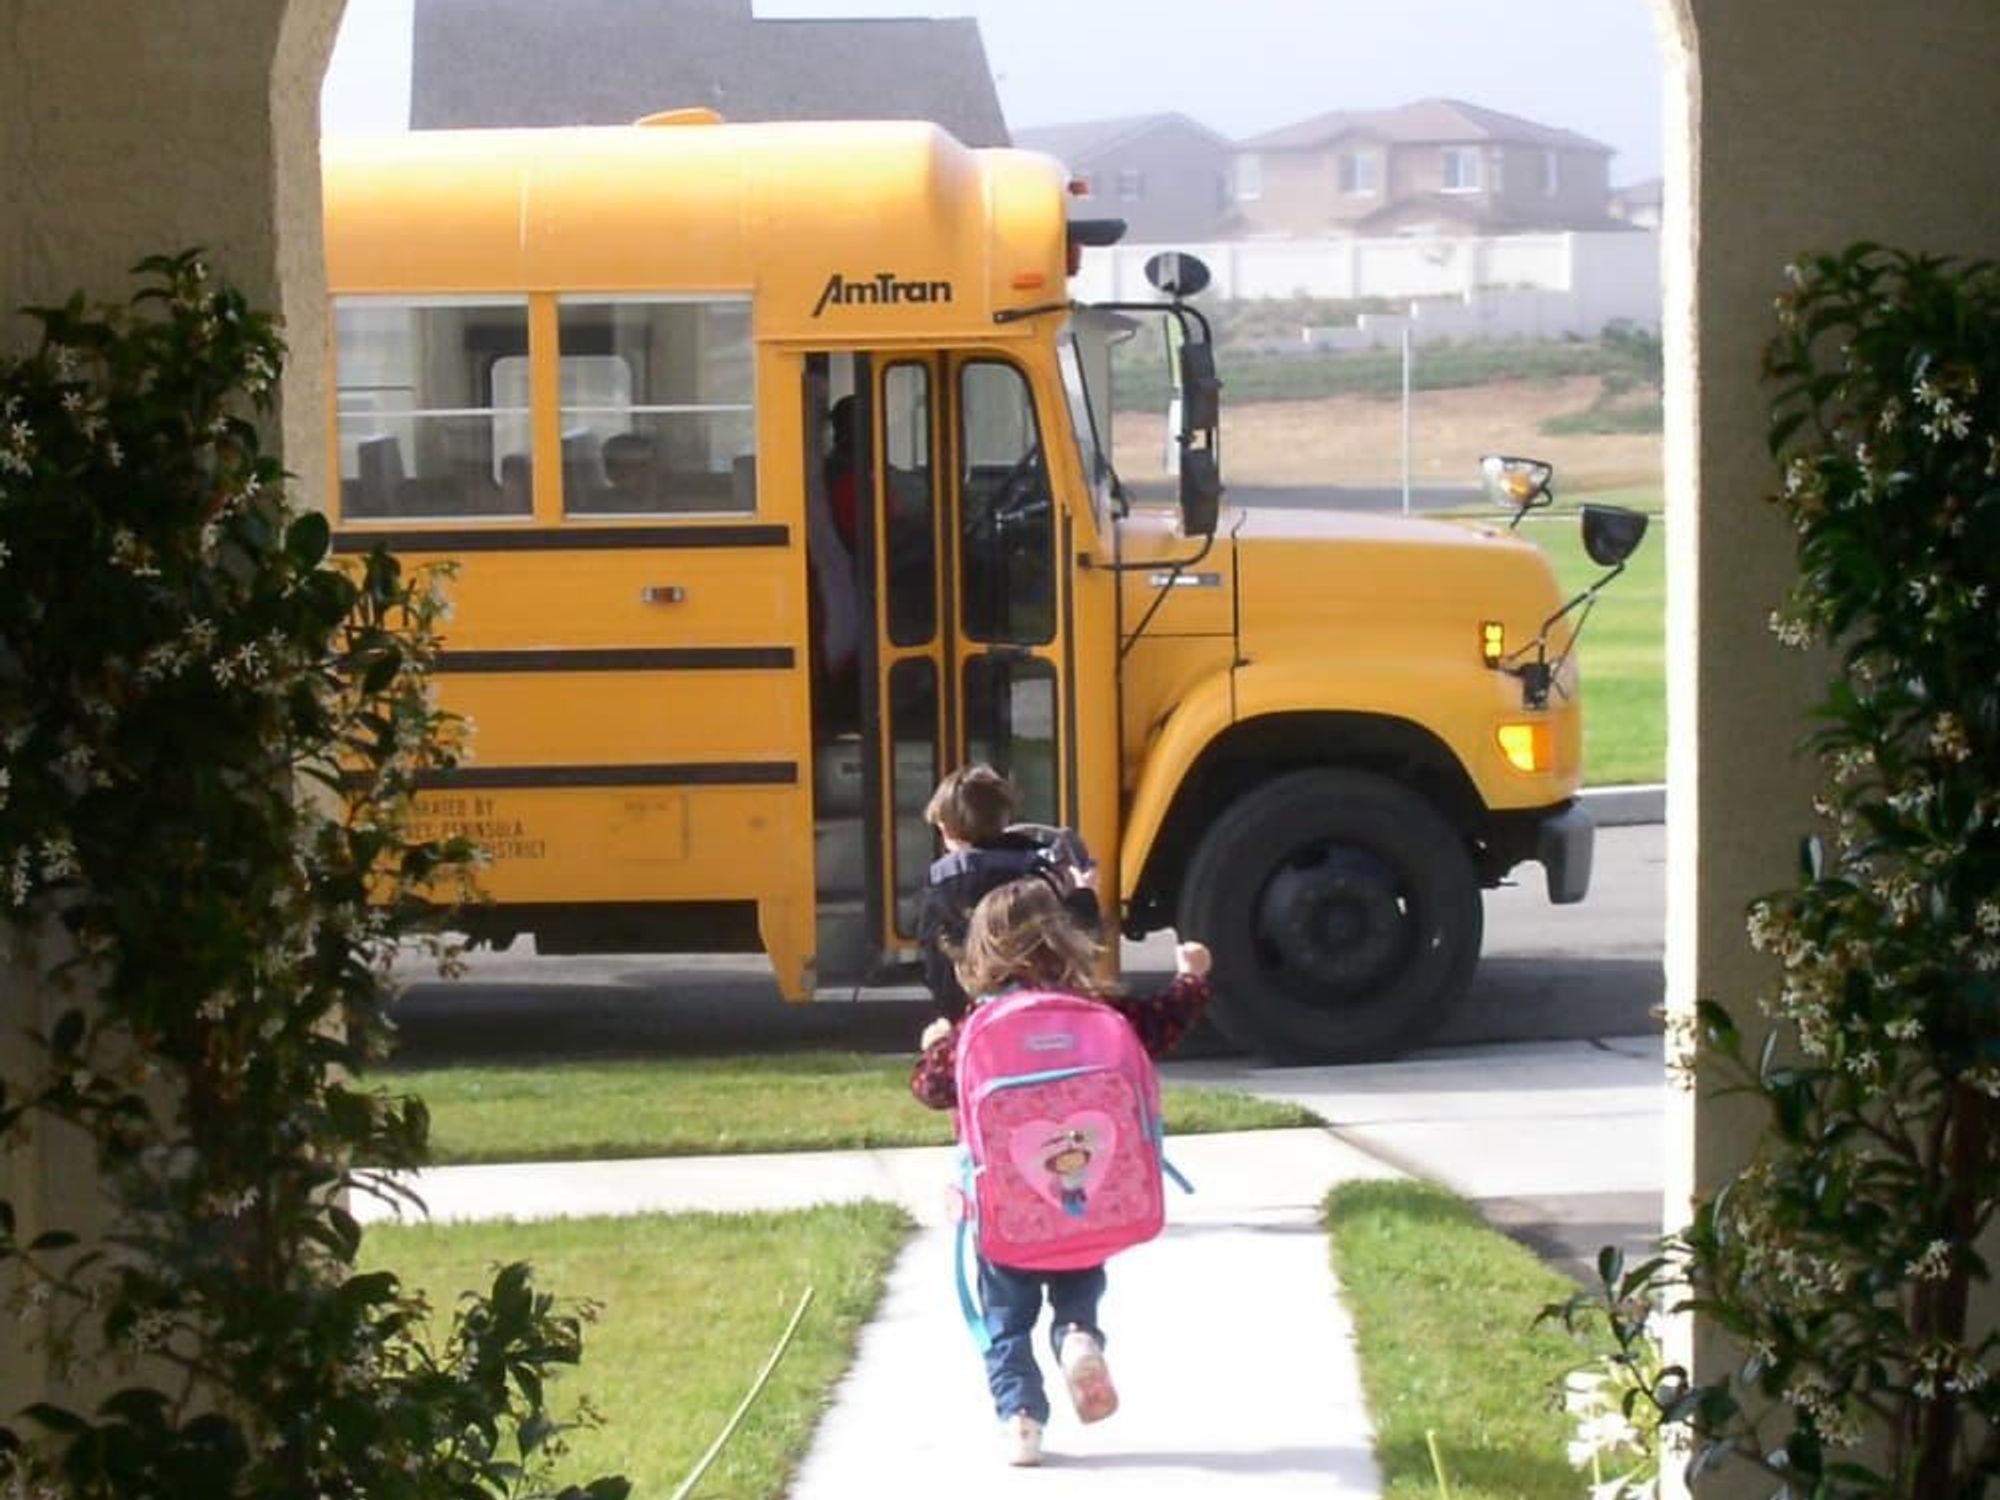 News_First day of school_bus_children